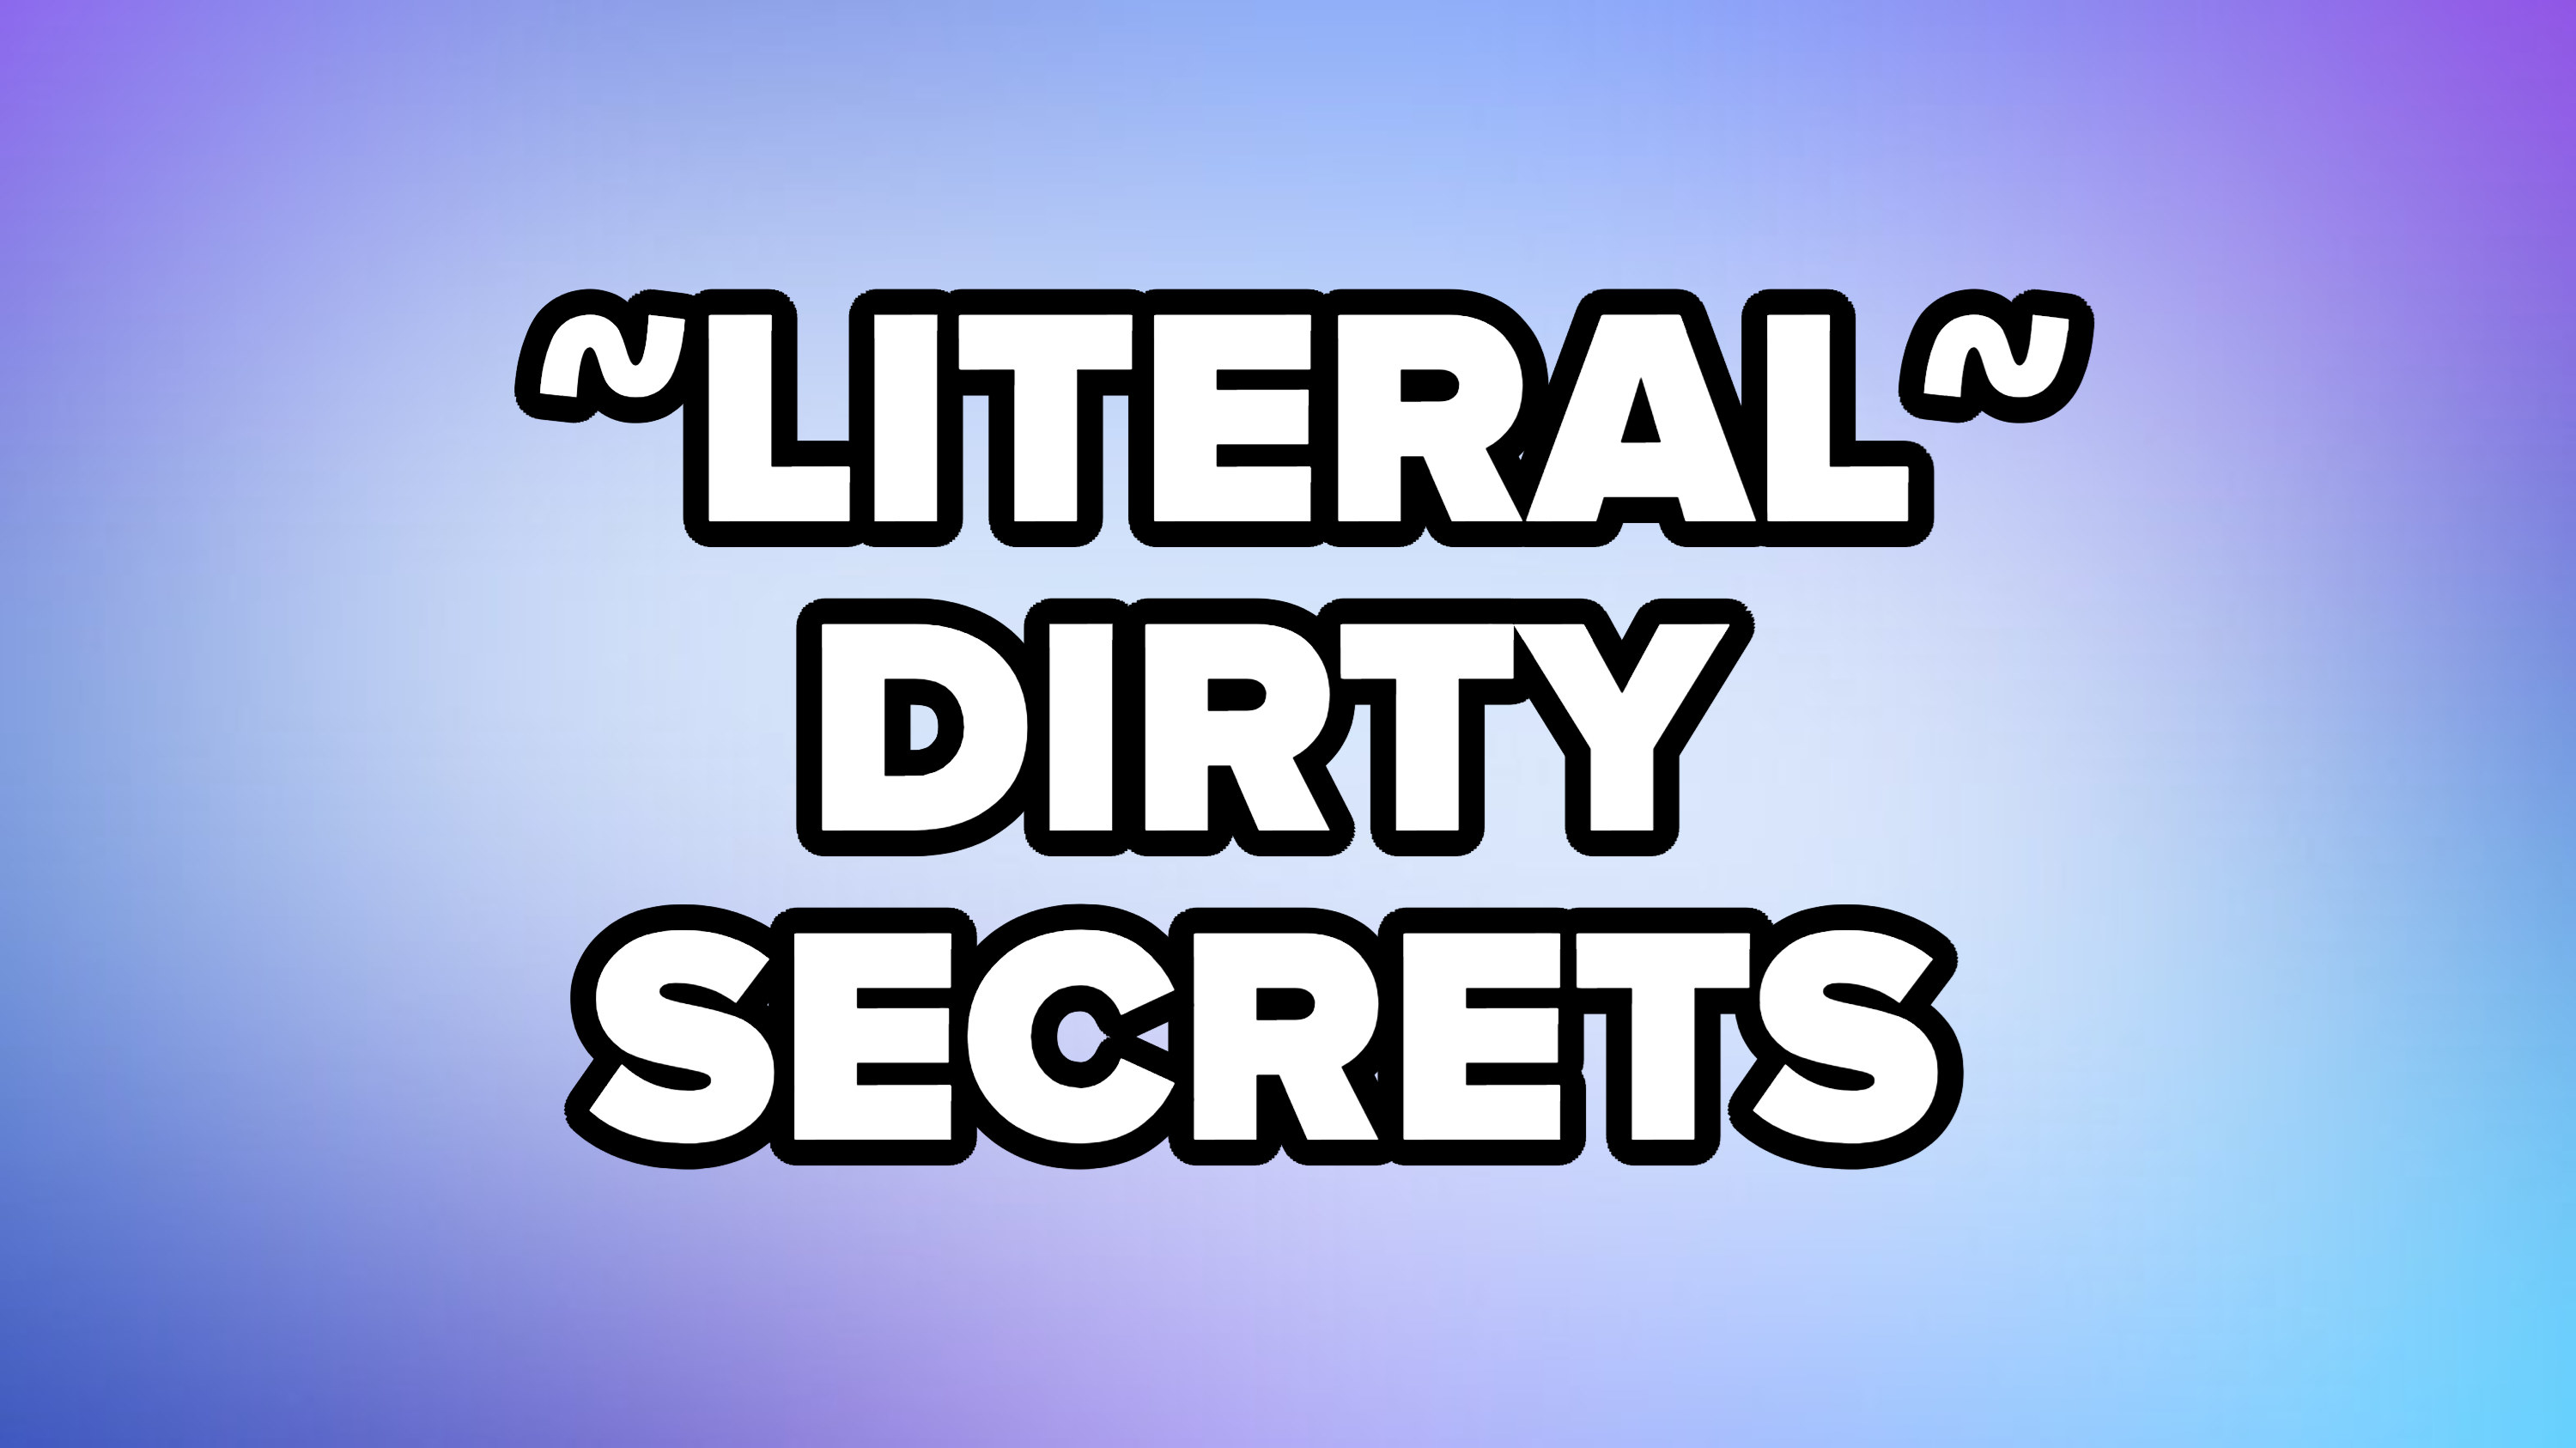 &quot;Literal dirty secrets&quot;